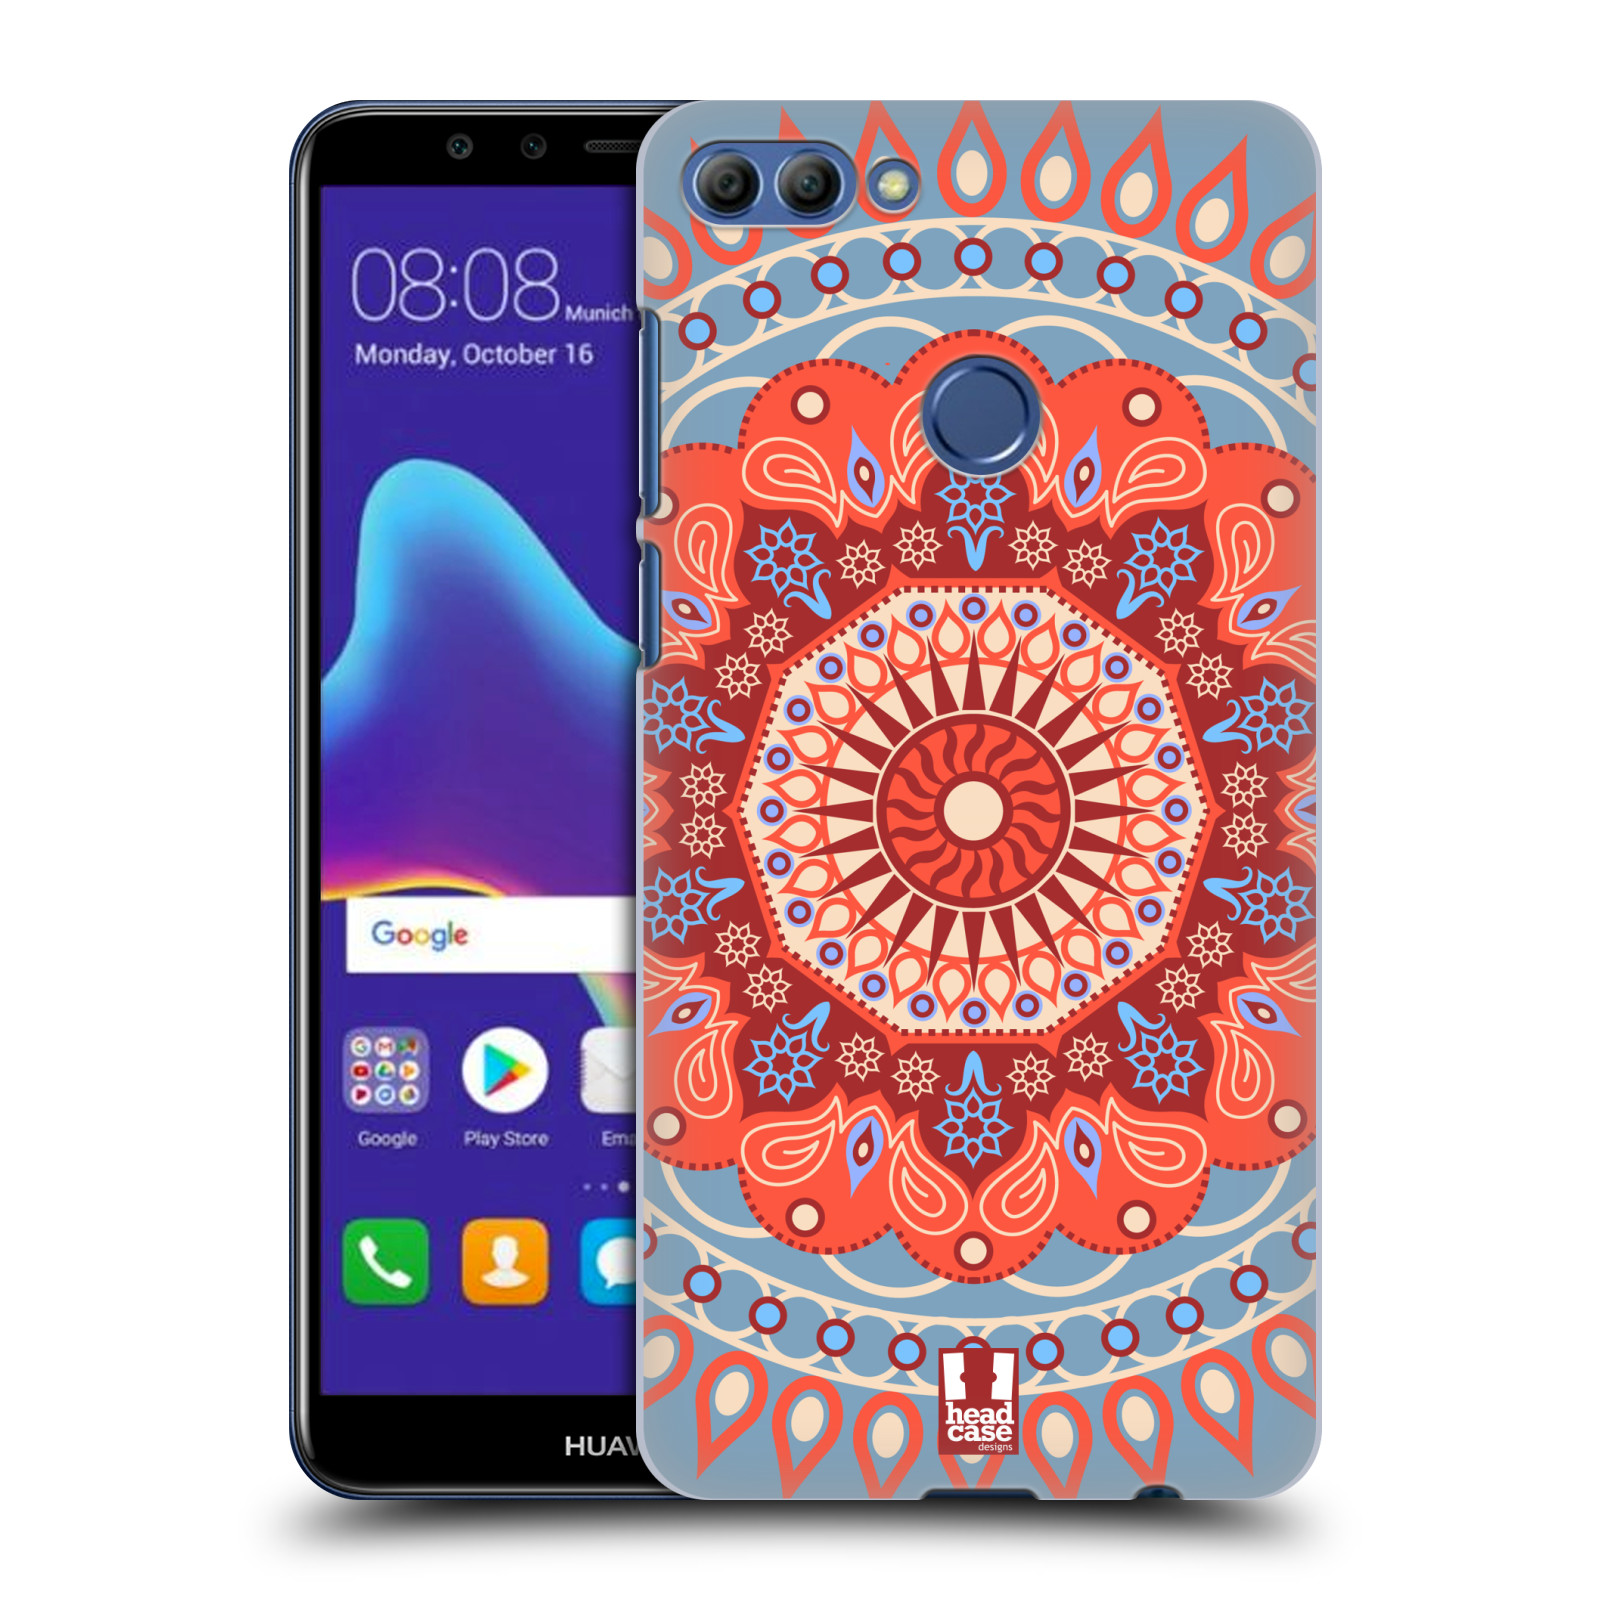 HEAD CASE plastový obal na mobil Huawei Y9 2018 vzor Indie Mandala slunce barevný motiv ČERVENÁ A MODRÁ